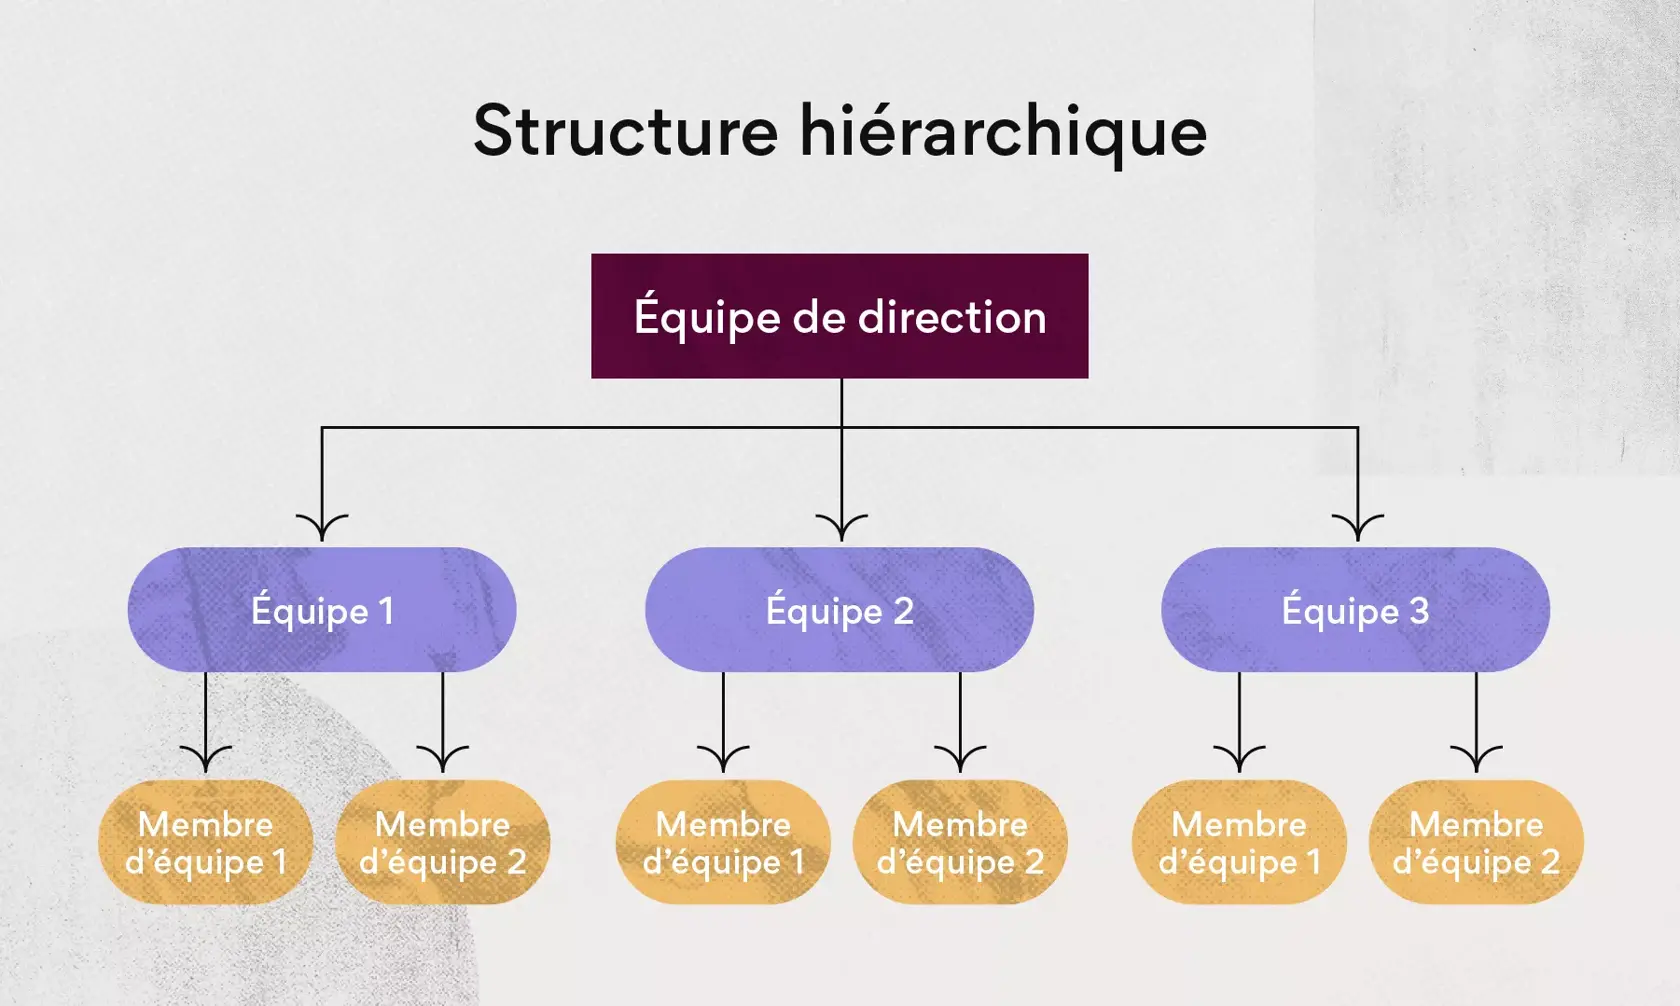 Structure hiérarchique